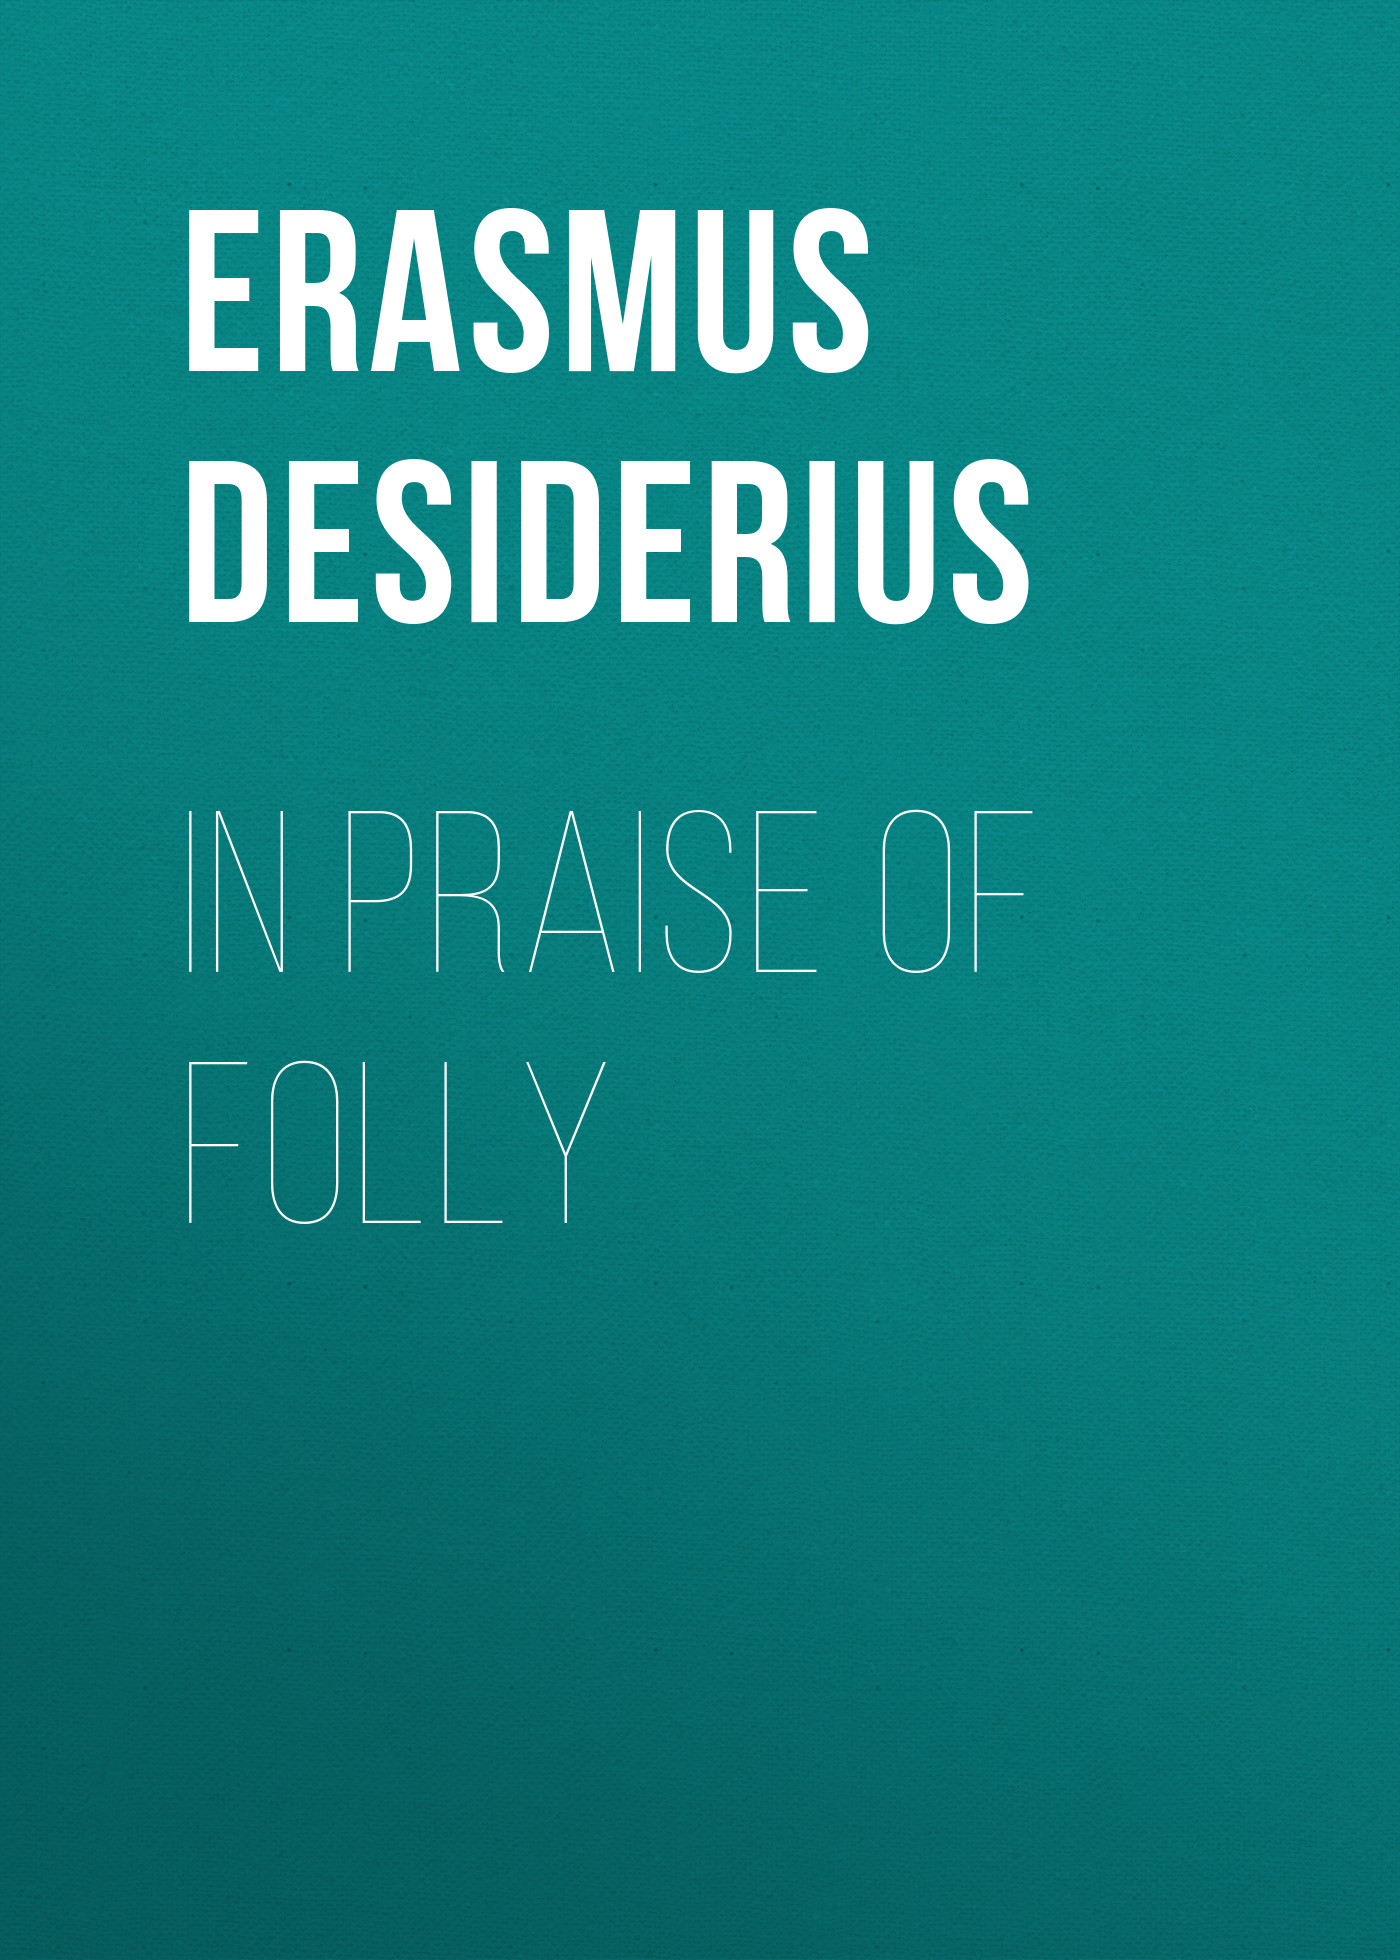 Книга In Praise of Folly из серии , созданная Desiderius Erasmus, может относится к жанру Зарубежная старинная литература, Зарубежная классика. Стоимость электронной книги In Praise of Folly с идентификатором 24713473 составляет 0 руб.